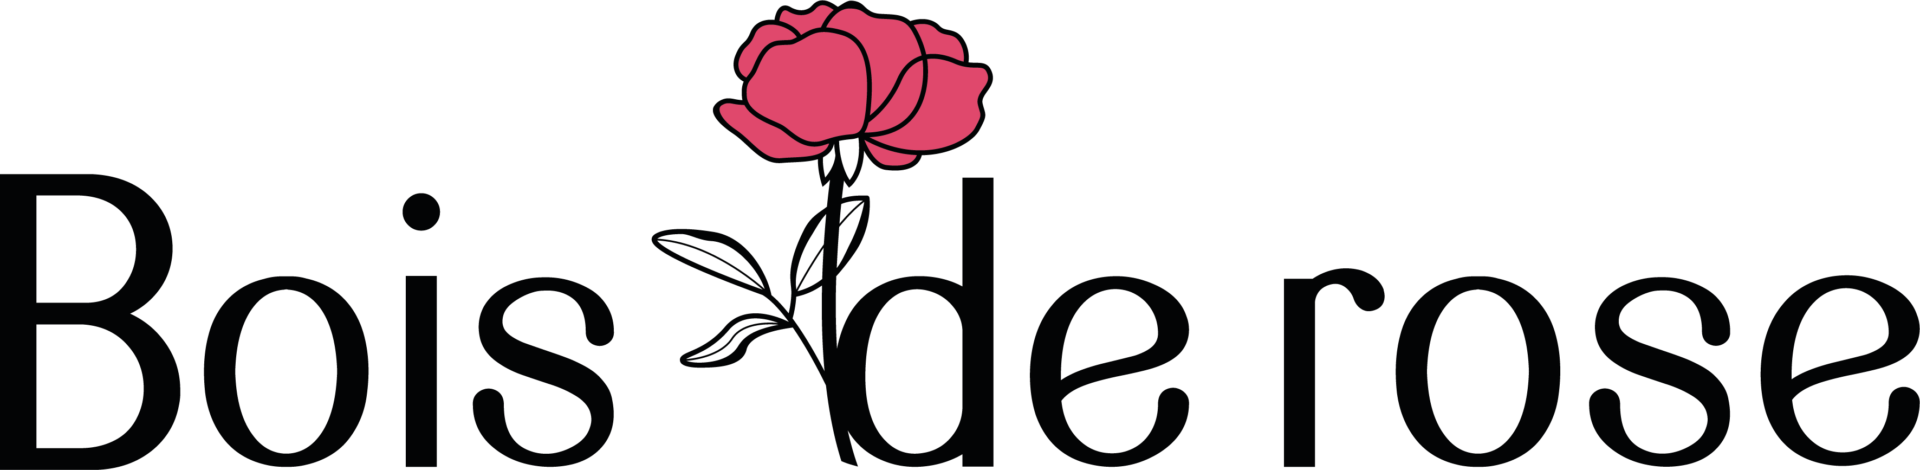 logo blois de rose